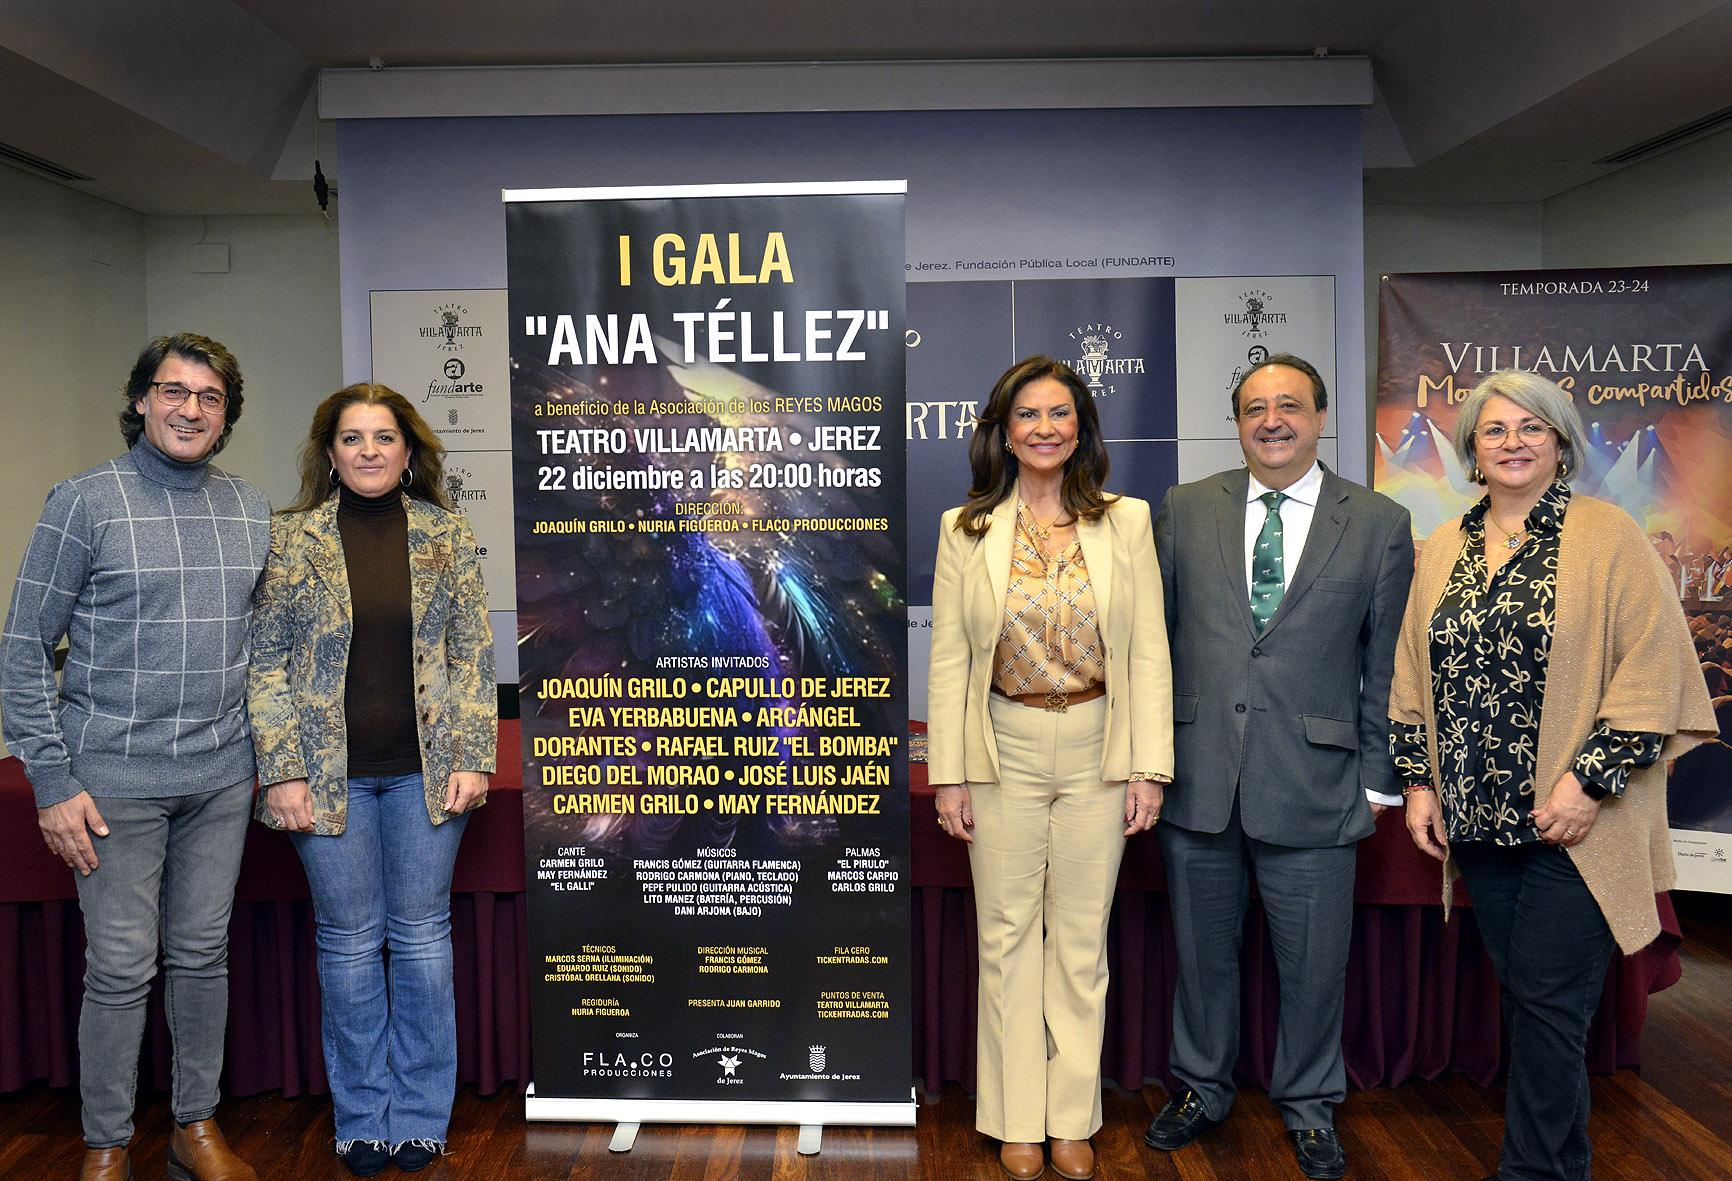 El viernes 22, Gala ‘Ana Téllez’, a beneficio de los Reyes Magos en el Teatro Villamarta